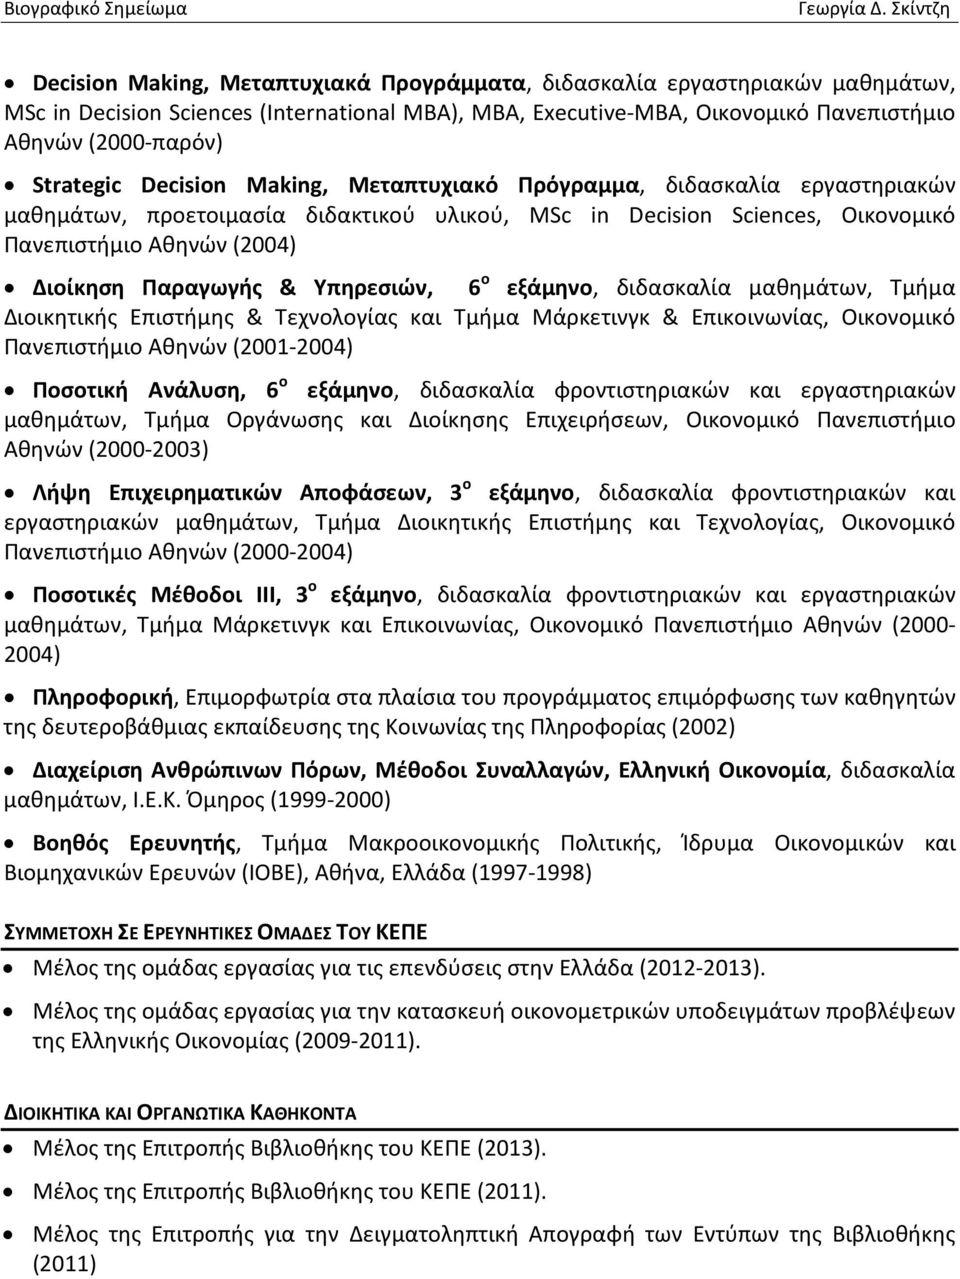 Υπηρεσιών, 6 ο εξάμηνο, διδασκαλία μαθημάτων, Τμήμα Διοικητικής Επιστήμης & Τεχνολογίας και Τμήμα Μάρκετινγκ & Επικοινωνίας, Οικονομικό Πανεπιστήμιο Αθηνών (2001-2004) Ποσοτική Ανάλυση, 6 ο εξάμηνο,